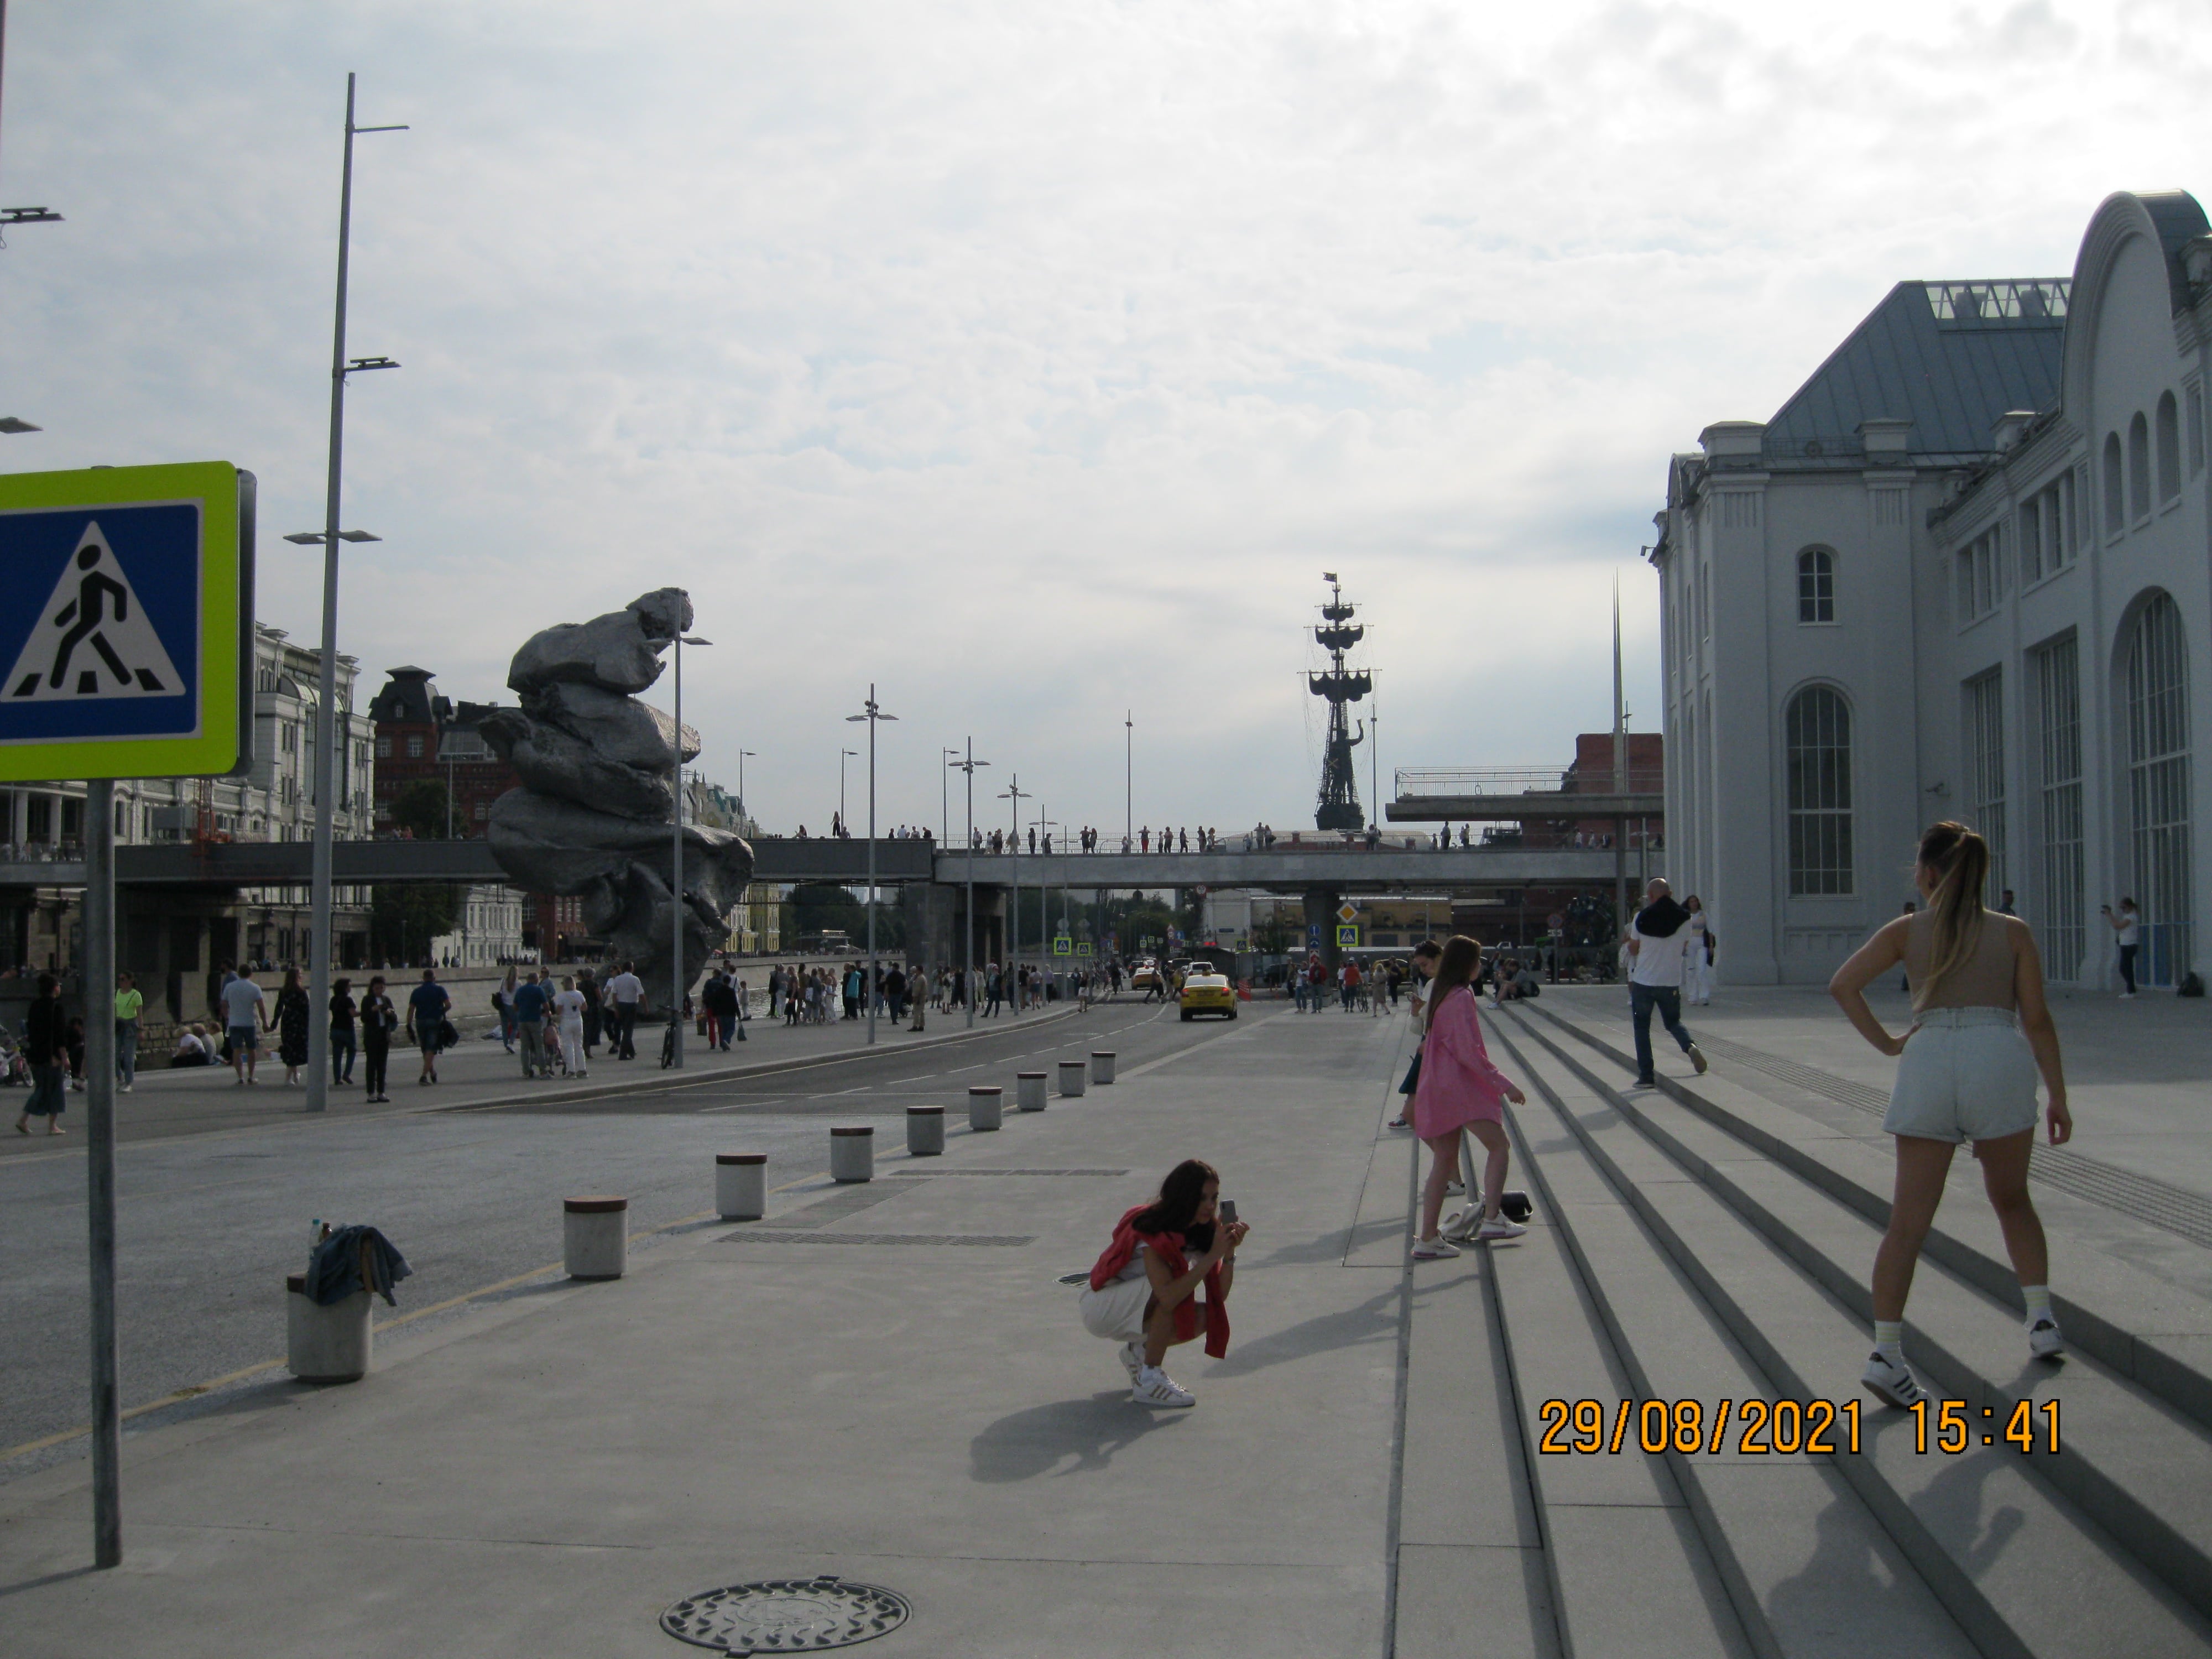 Памятник какашке установили в центре Москвы на Болотной. Официальное название объекта-Скульптура швейцарского художника Урса Фишера «Большая глина №4»